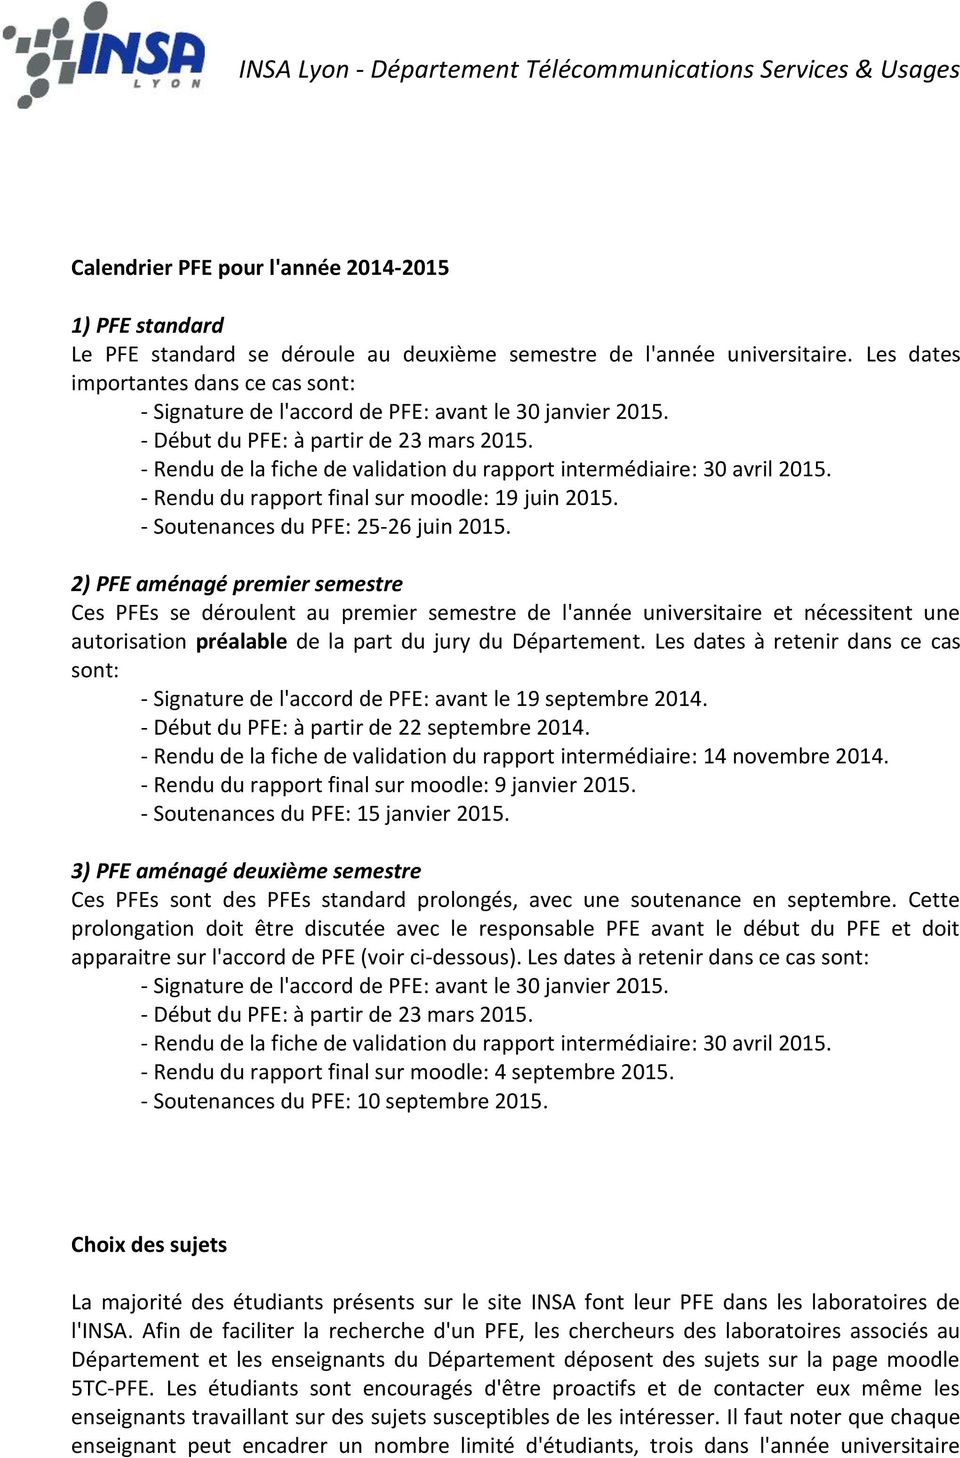 - Rendu de la fiche de validation du rapport intermédiaire: 30 avril 2015. - Rendu du rapport final sur moodle: 19 juin 2015. - Soutenances du PFE: 25-26 juin 2015.